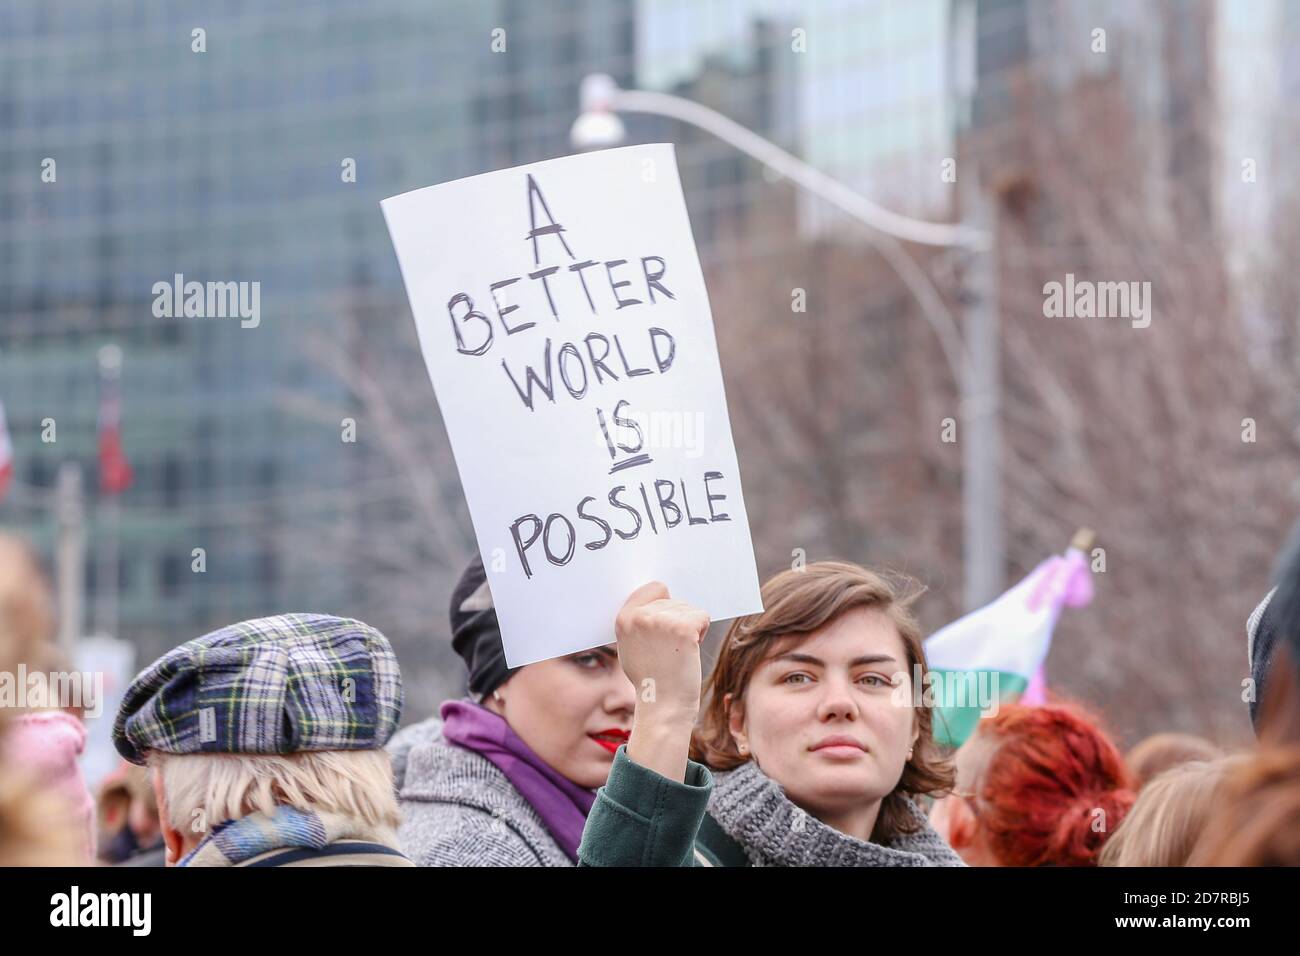 Eine Protesterin mit einem Plakat, das ihre Meinung während der Demonstration zum Ausdruck brachte.Tausende Frauen und ihre Verbündeten marschierten zur Unterstützung des Marsches der Frauen in Washington. Stockfoto